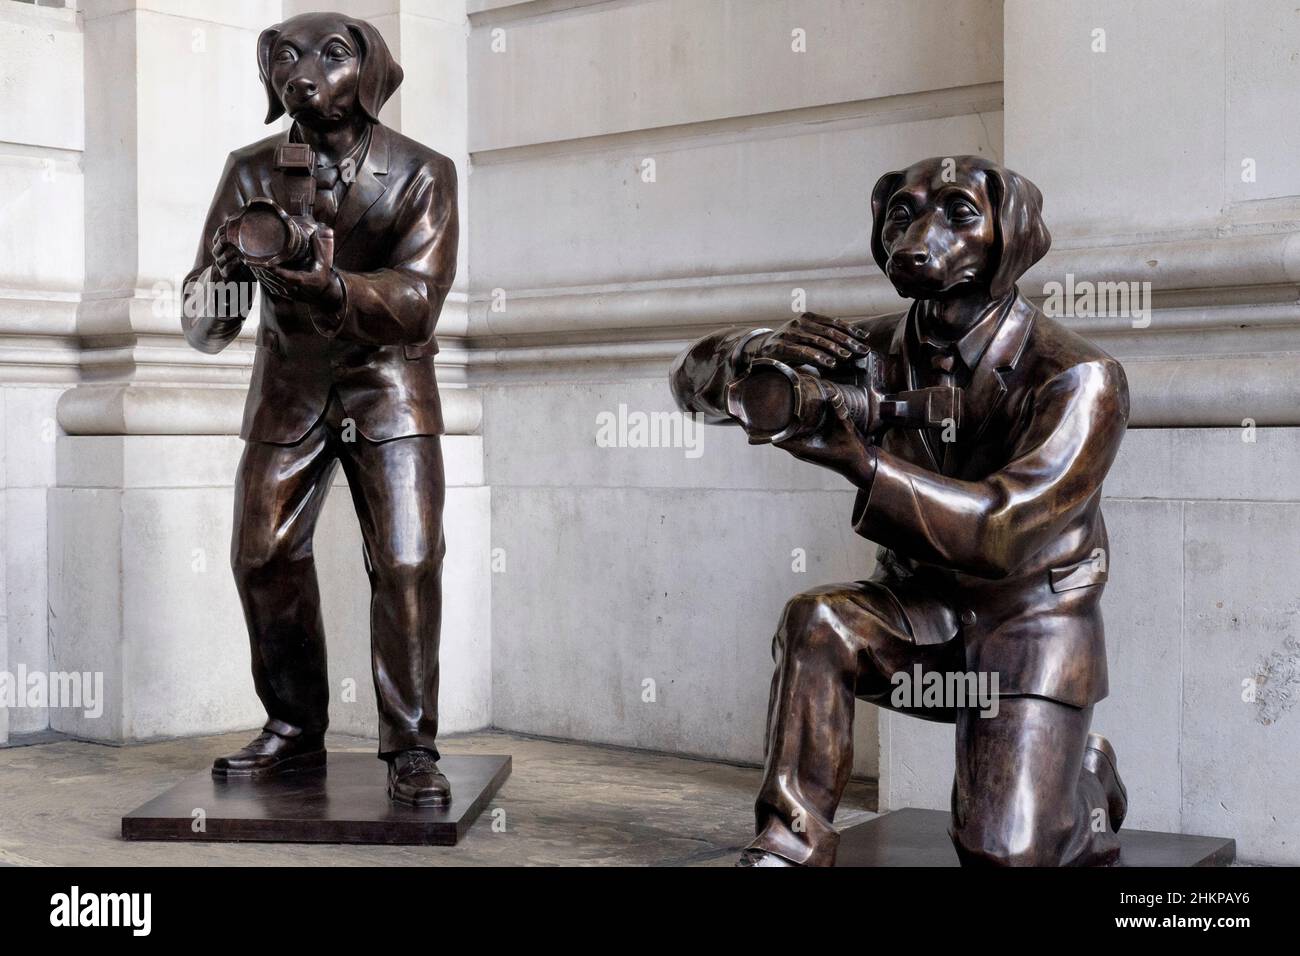 Paparazzi Dogs; sculture in bronzo del duo artistico Gillie e Marc di New York in mostra pubblica all'ingresso del Royal Exchange, Londra, Regno Unito. Foto Stock